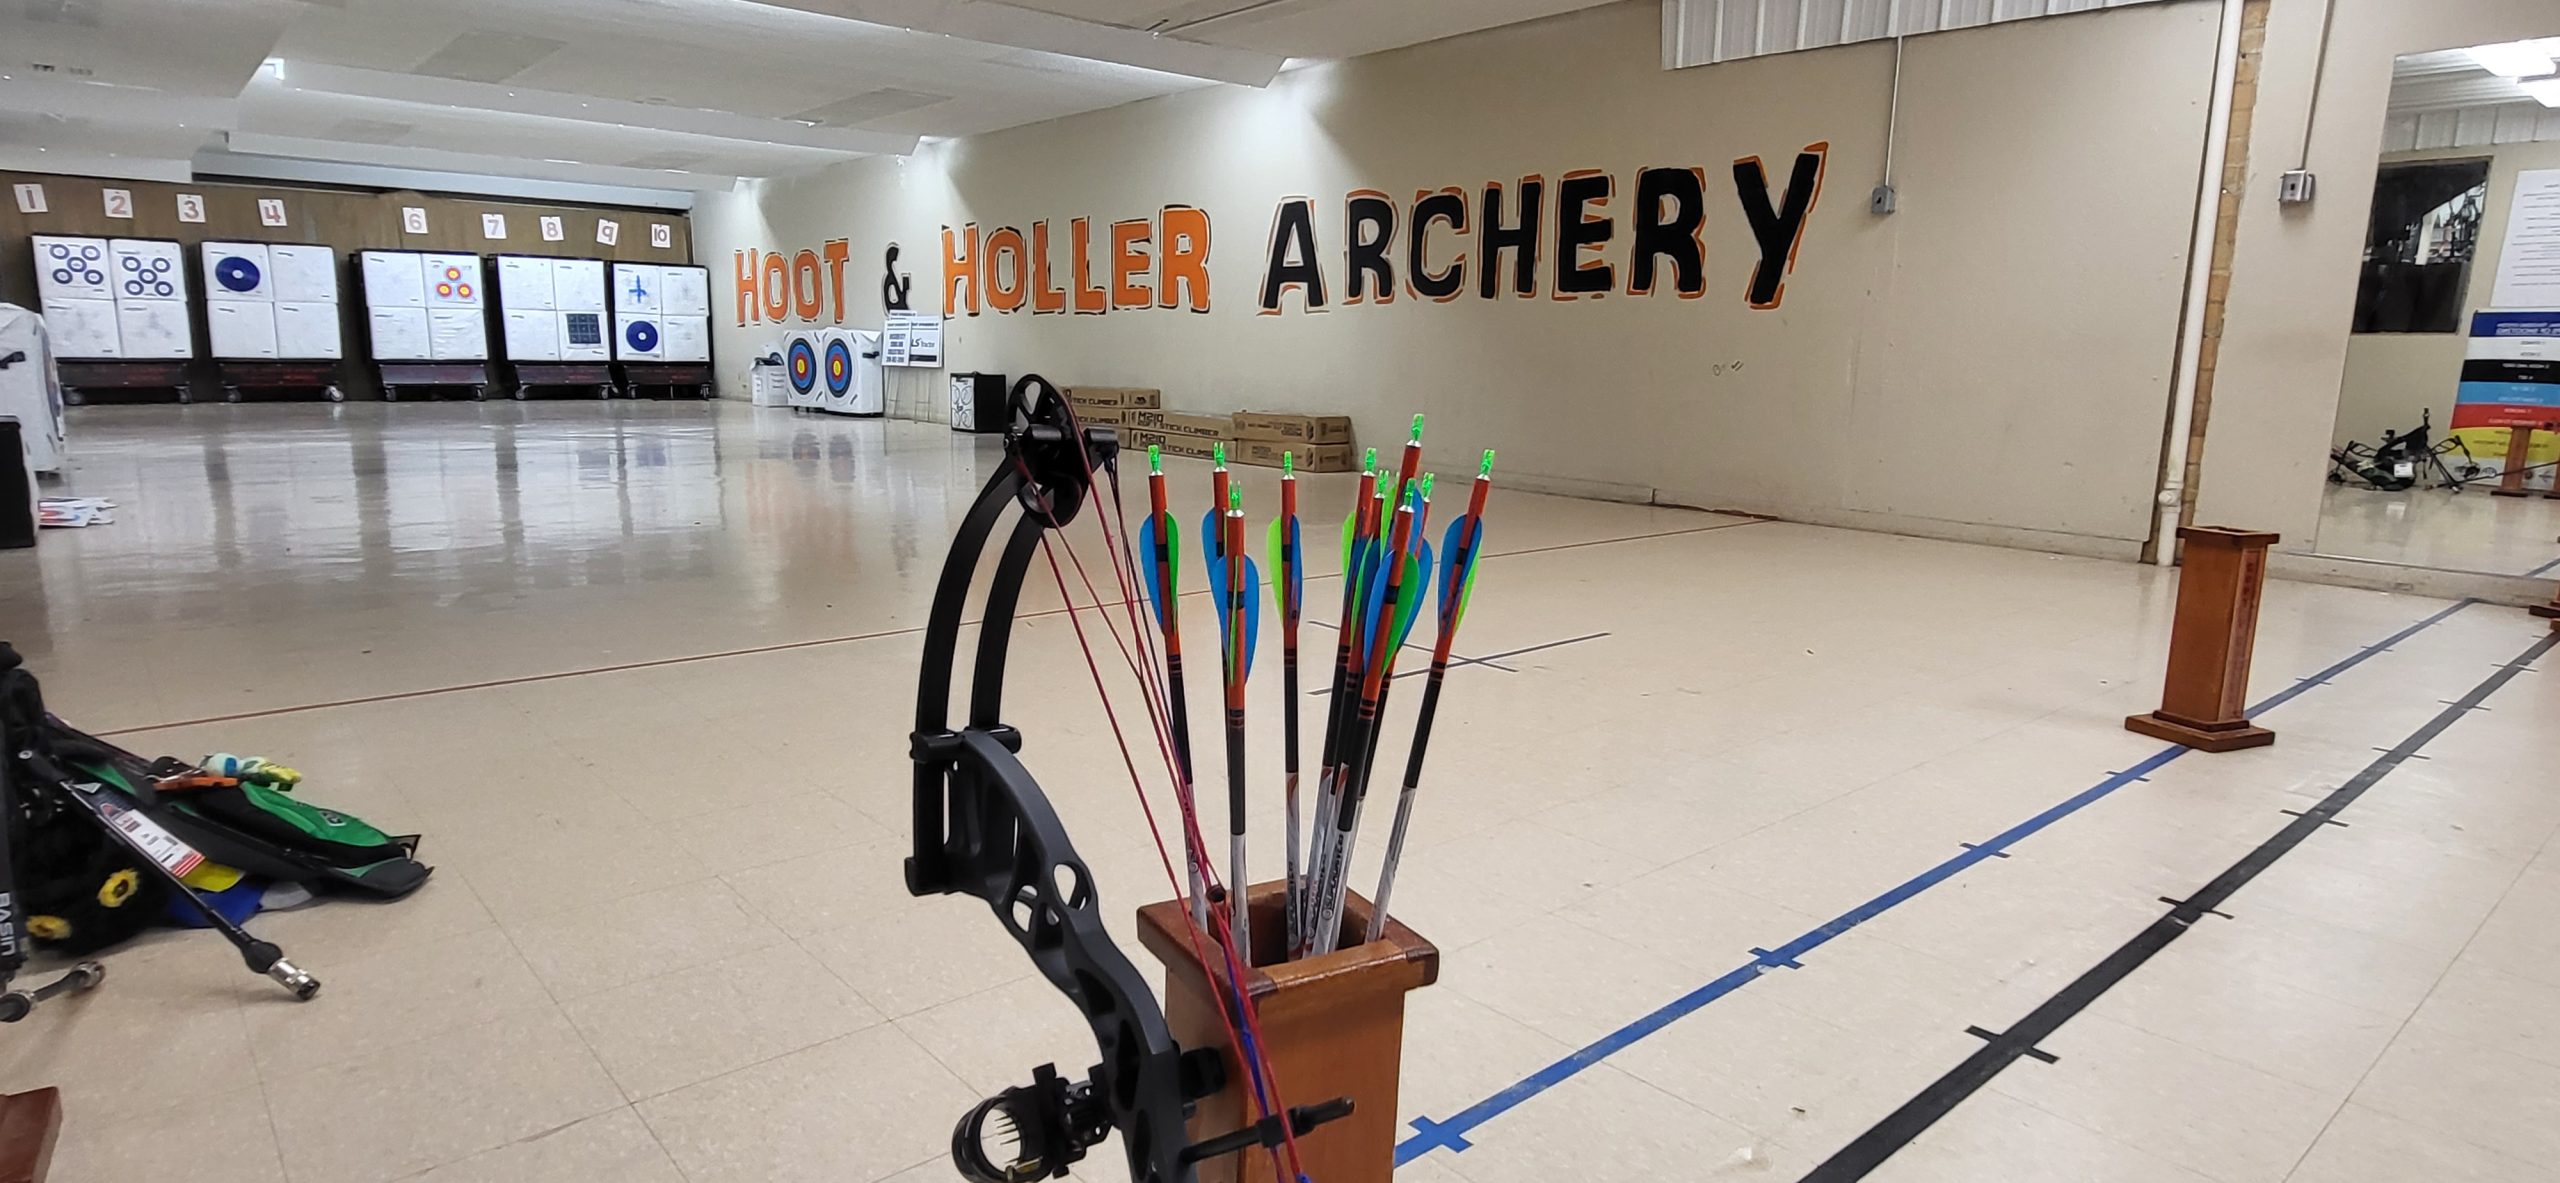 Hoot & Holler Archery